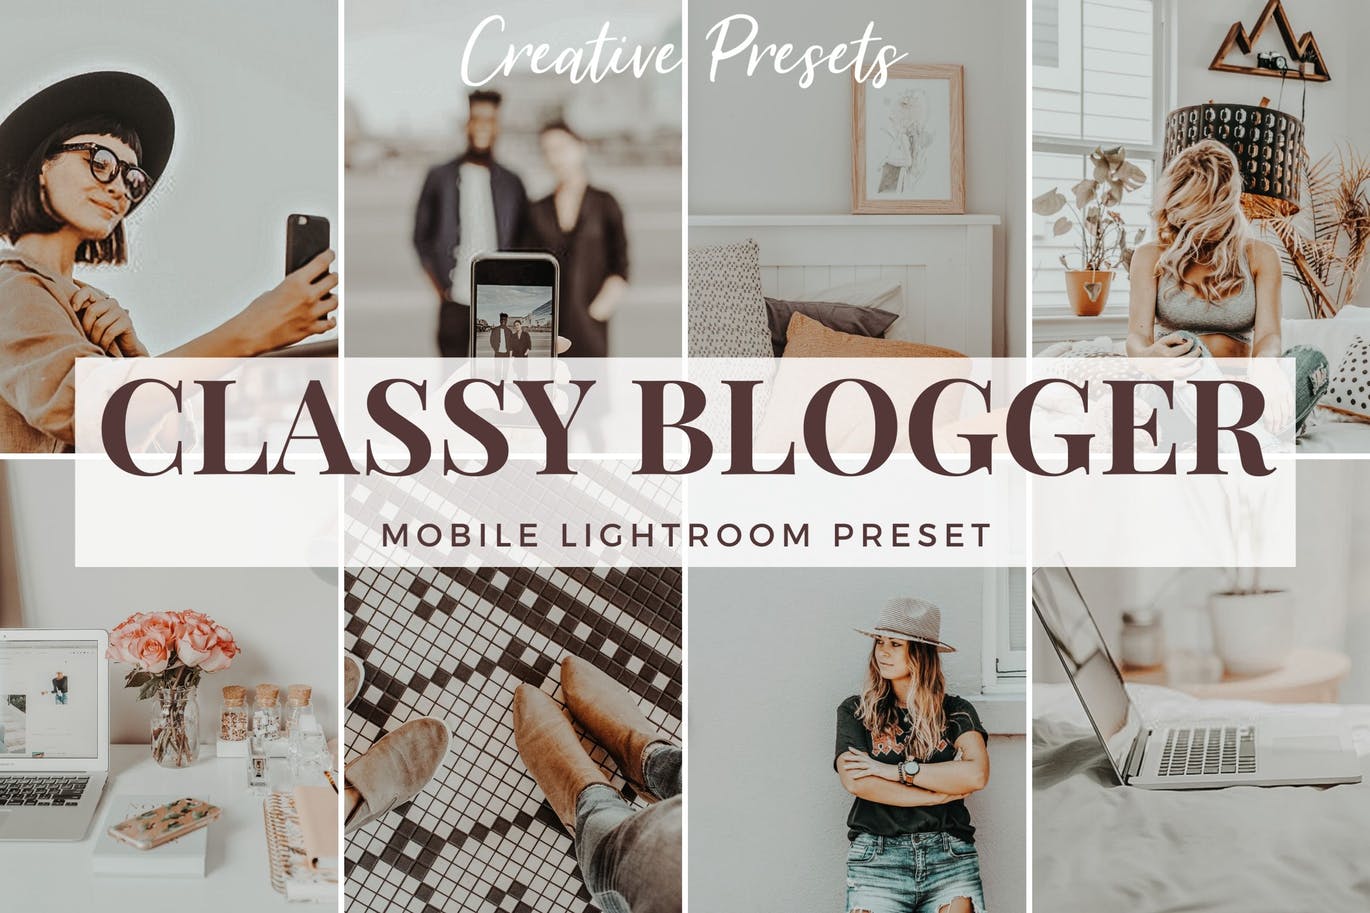 永恒经典照片风格调色滤镜蚂蚁素材精选LR预设 Classy Blogger – Mobile Lightroom Preset插图